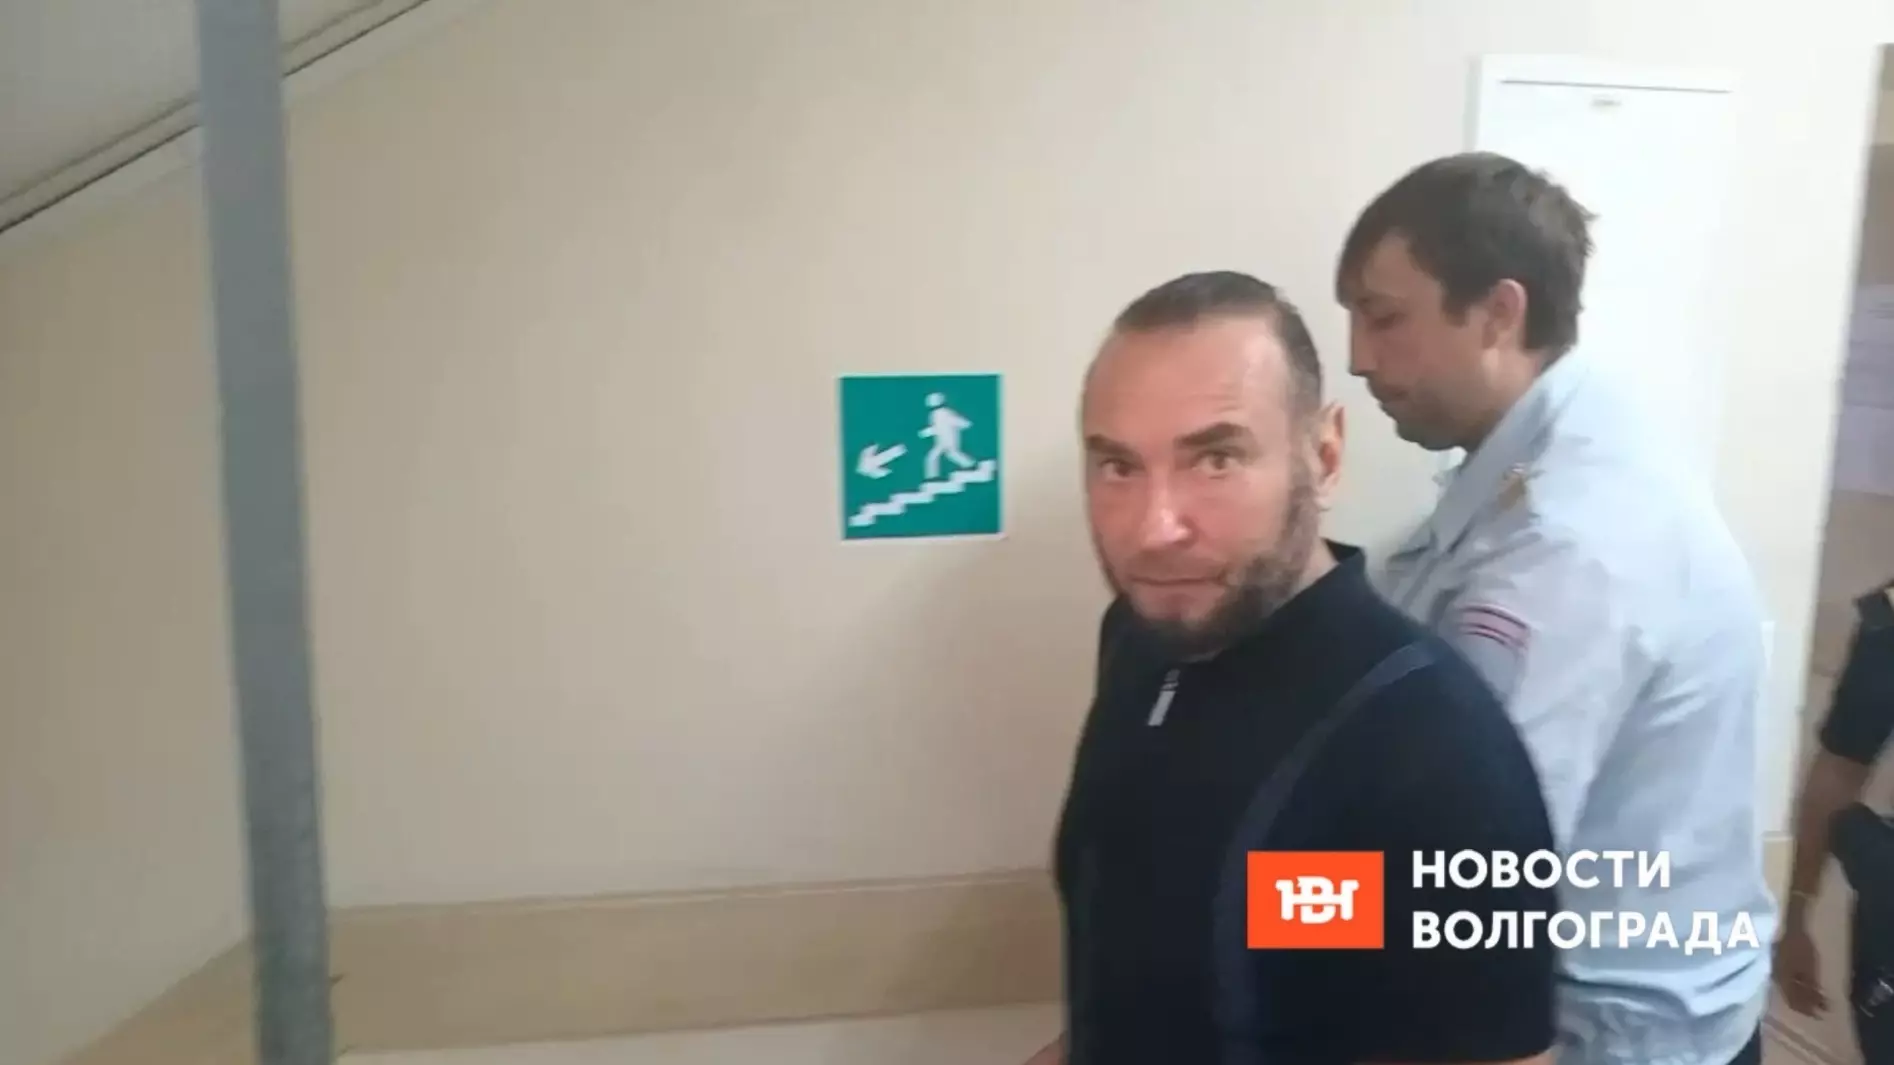 Депутат вымогал деньги у юриста в Волгограде